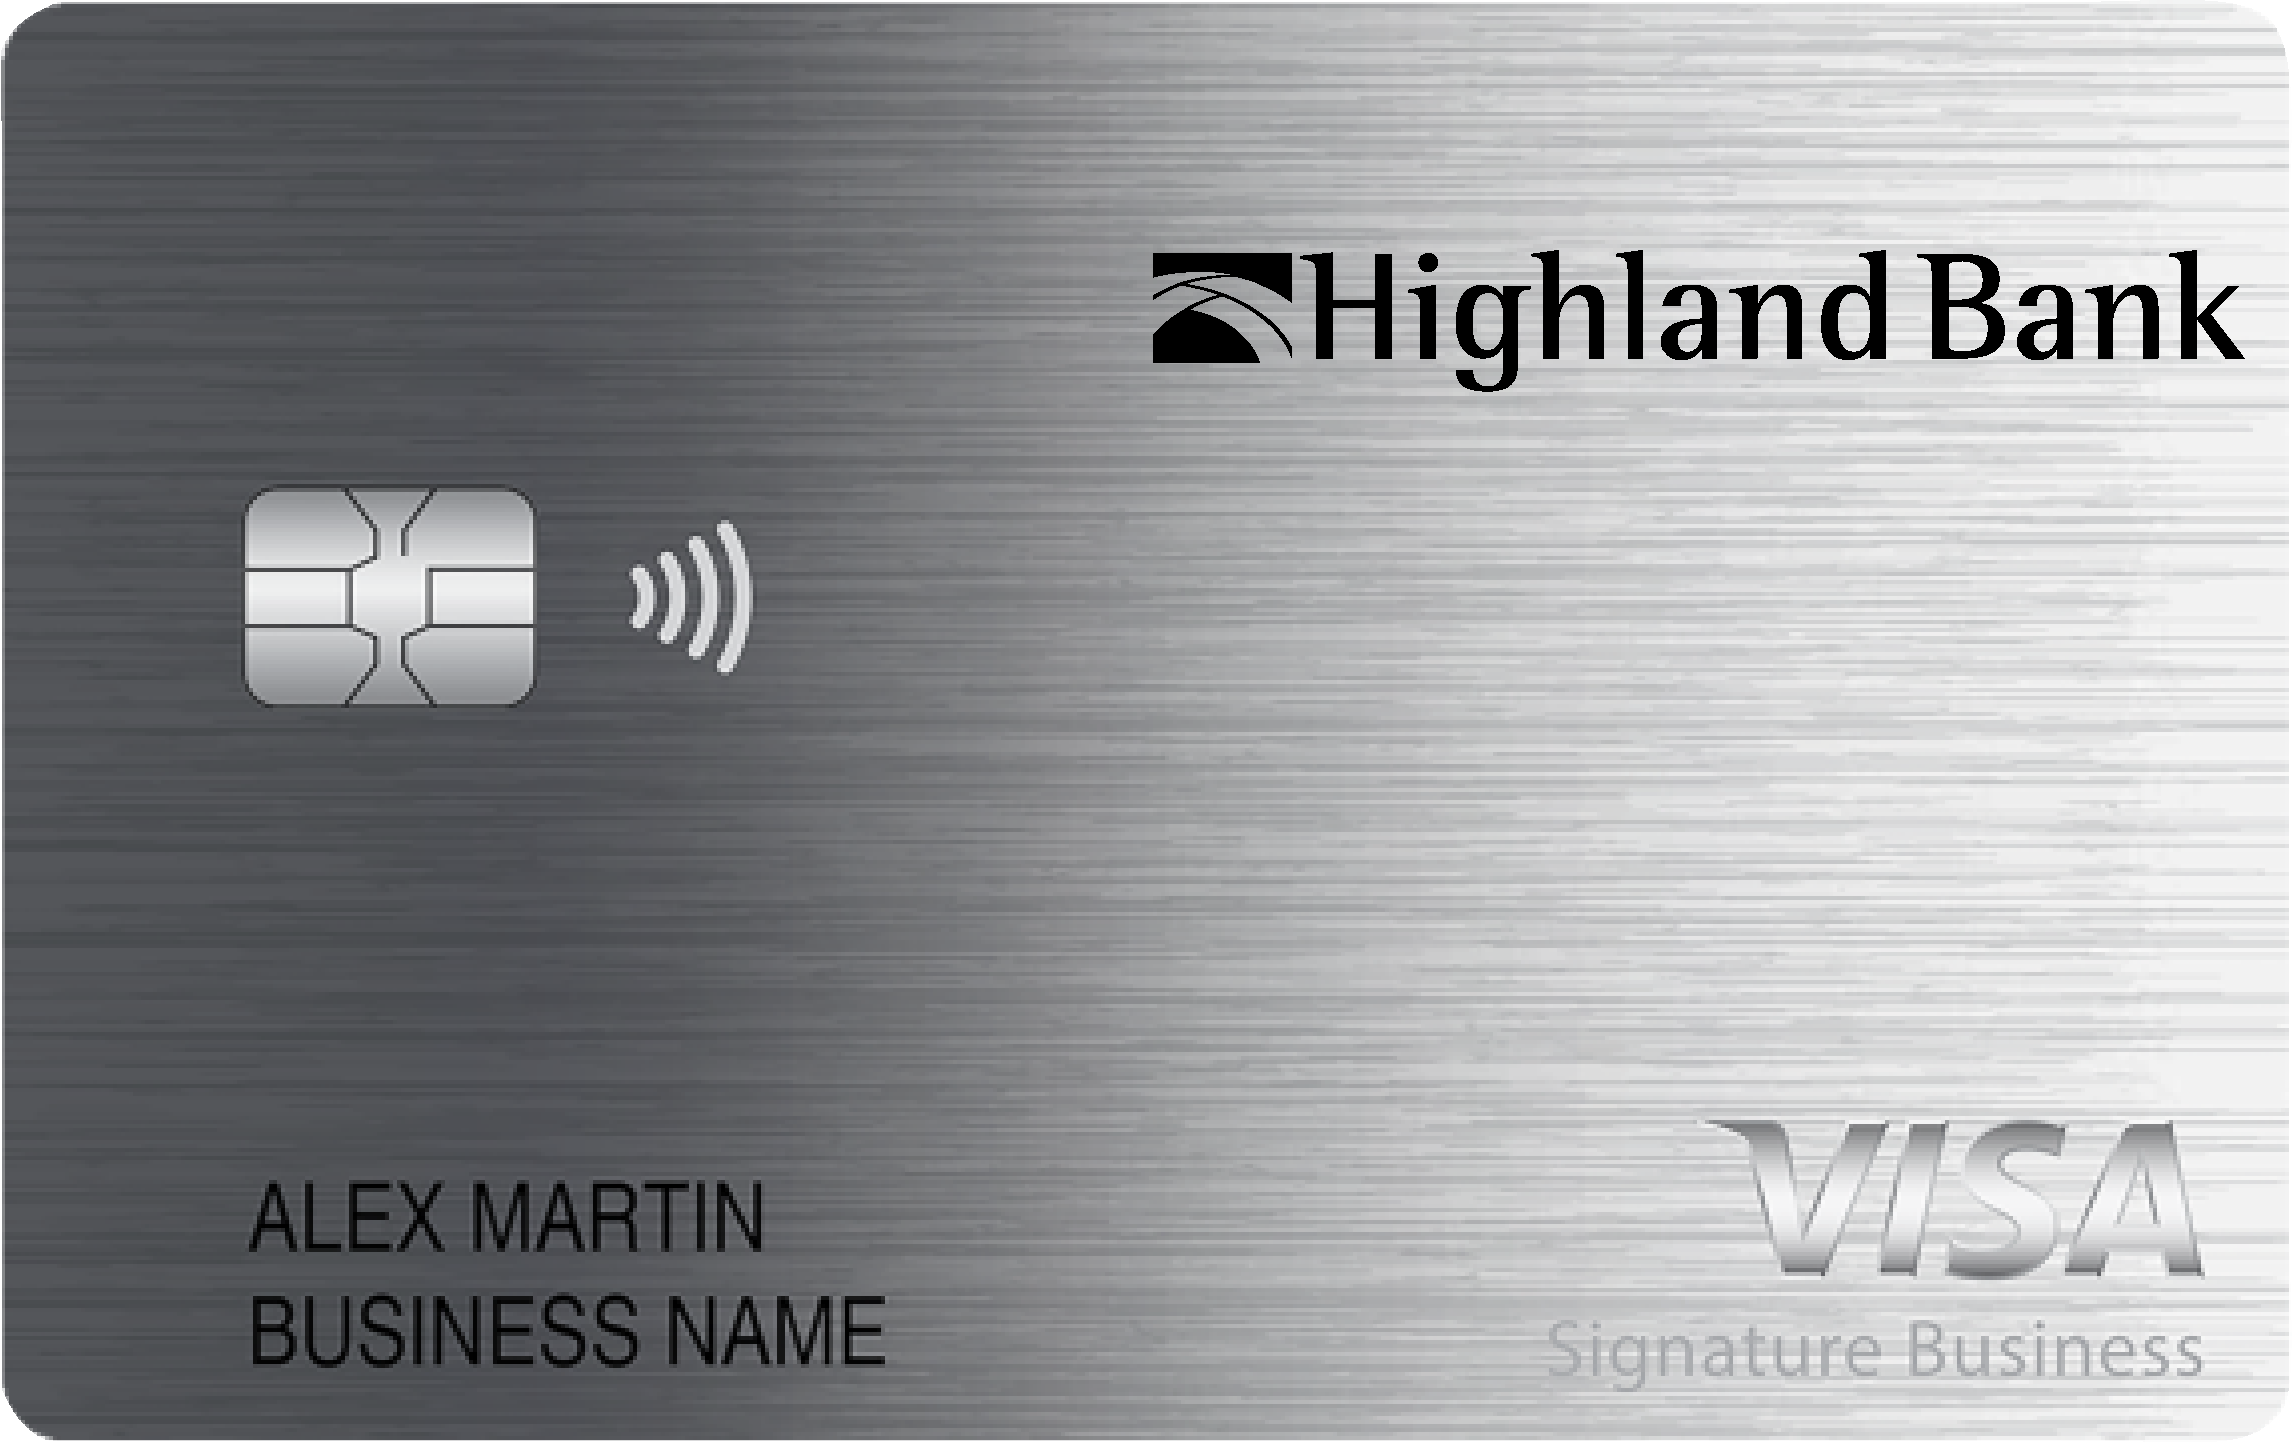 Highland Bank Smart Business Rewards Card